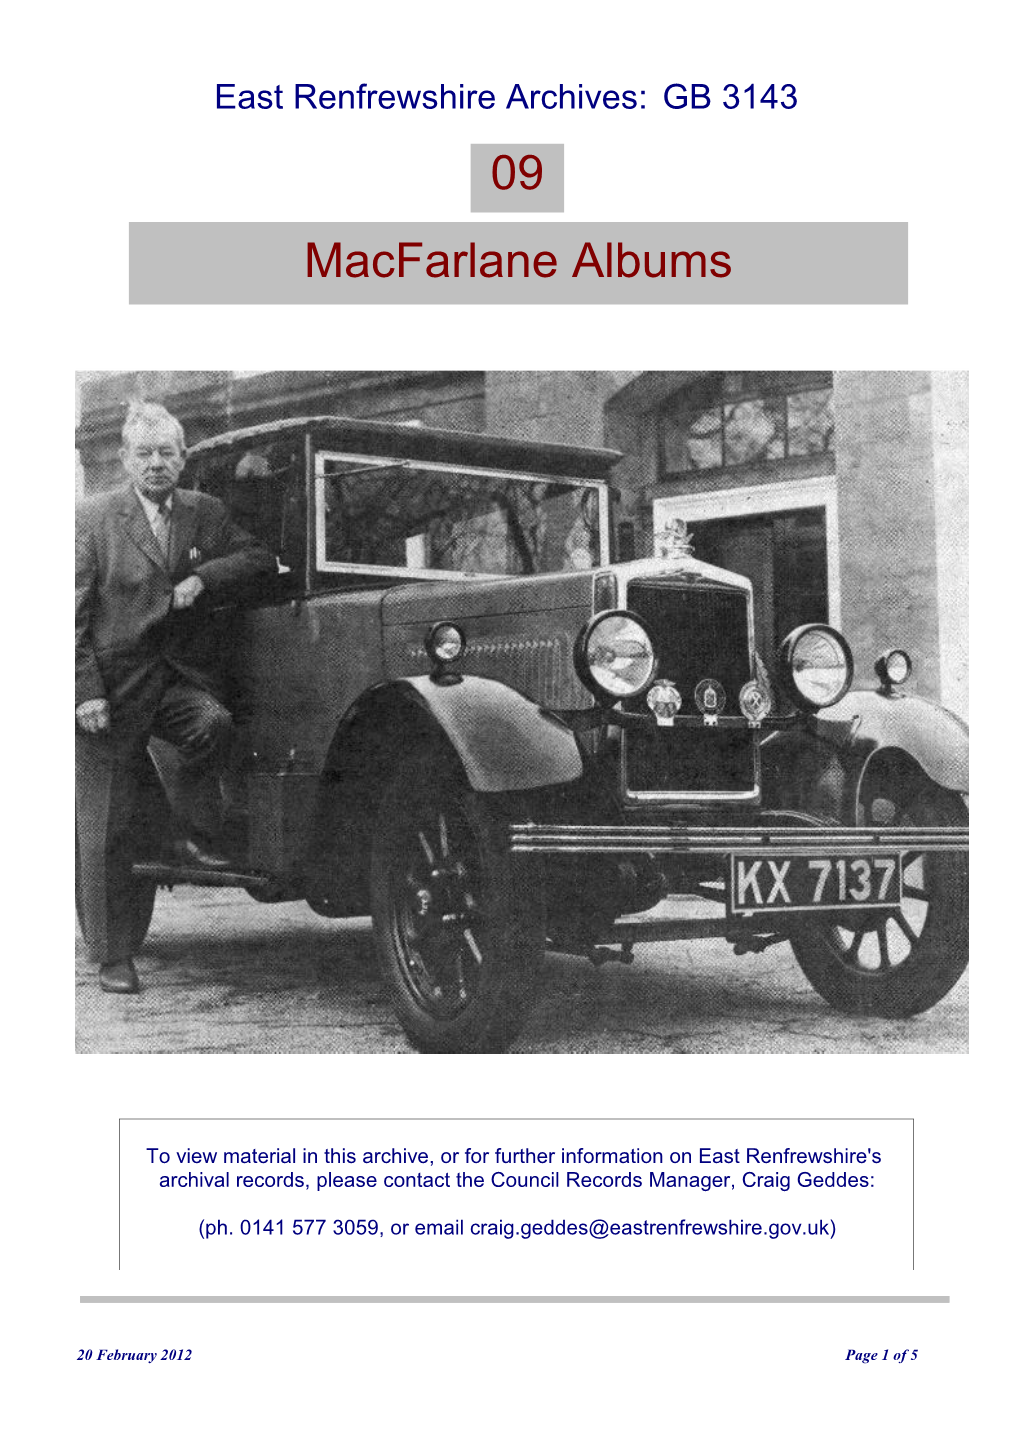 Macfarlane Albums